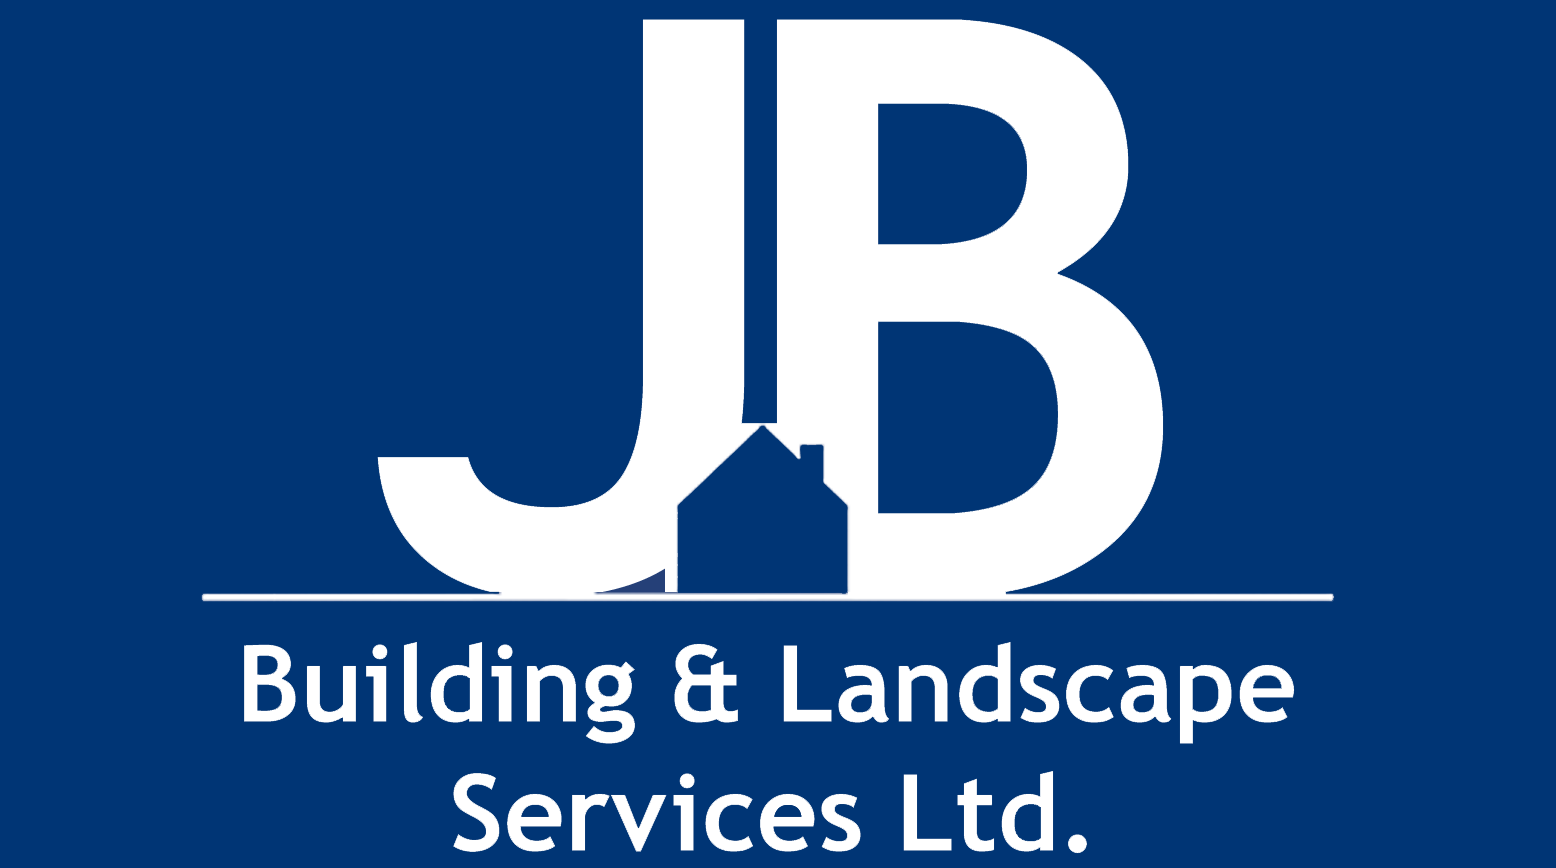 JB Building and Landscape Services Ltd logo